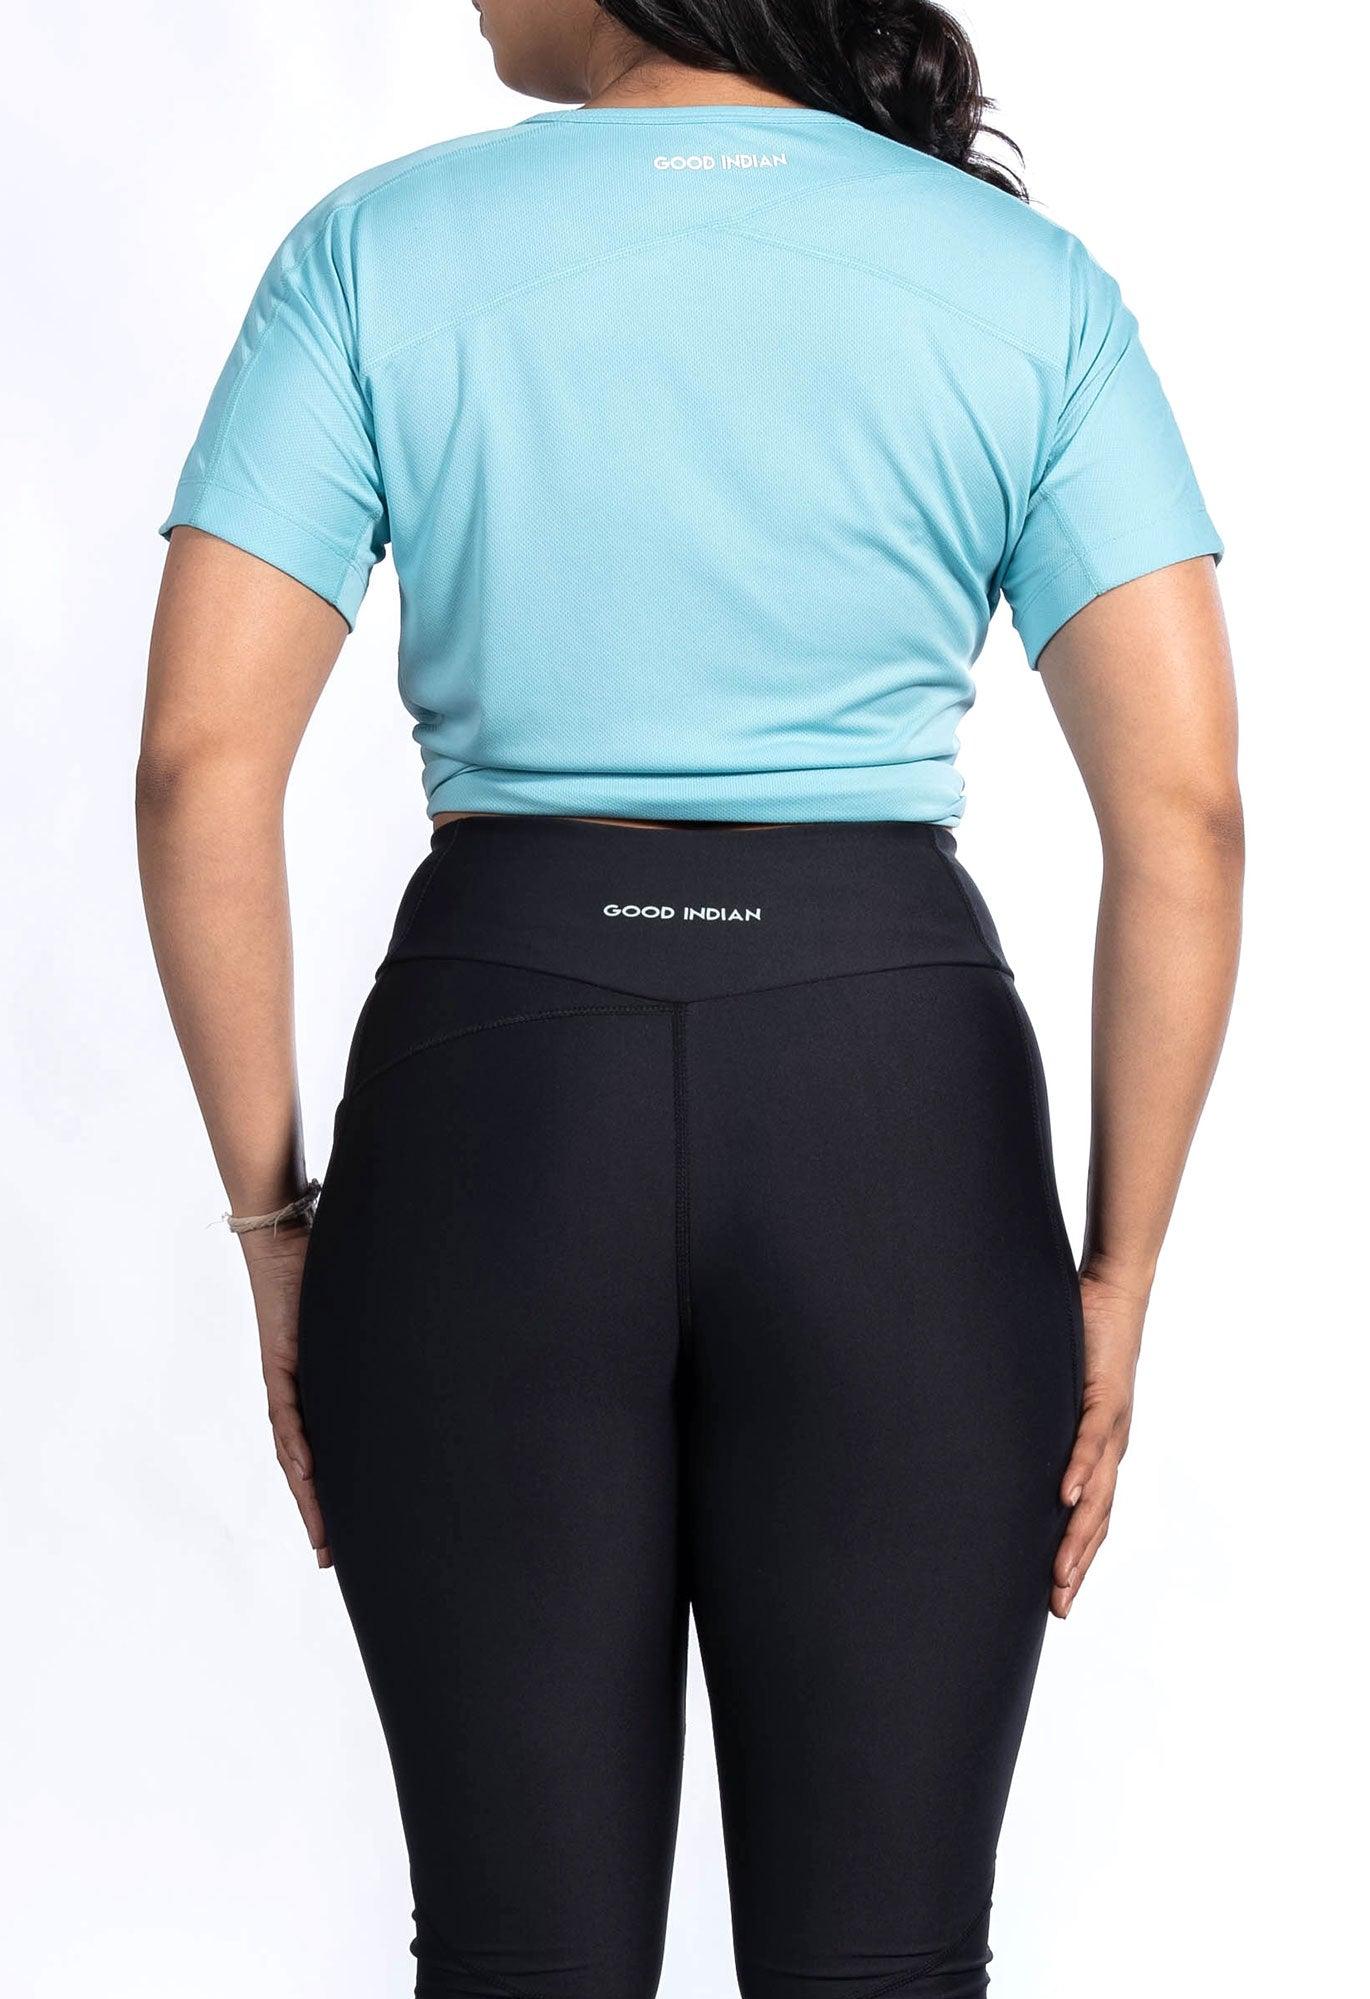 10 Best Athletic Pants For Women • Kath Eats